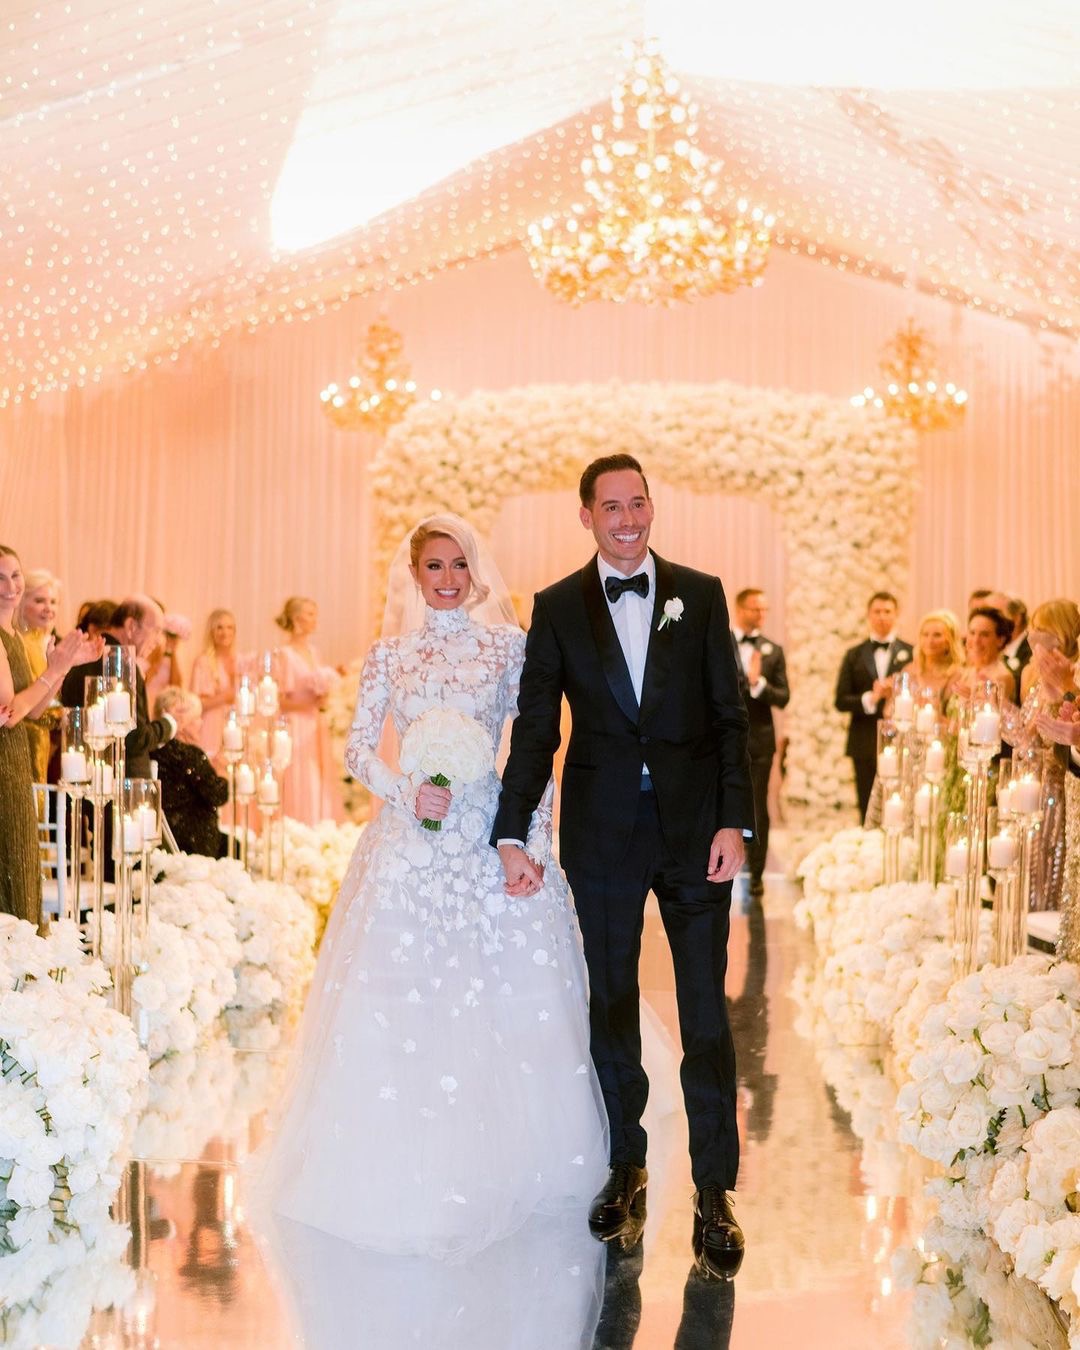 Мільйон білих троянд і марафон весільних суконь: деталі казкового весілля Періс Гілтон ФОТО